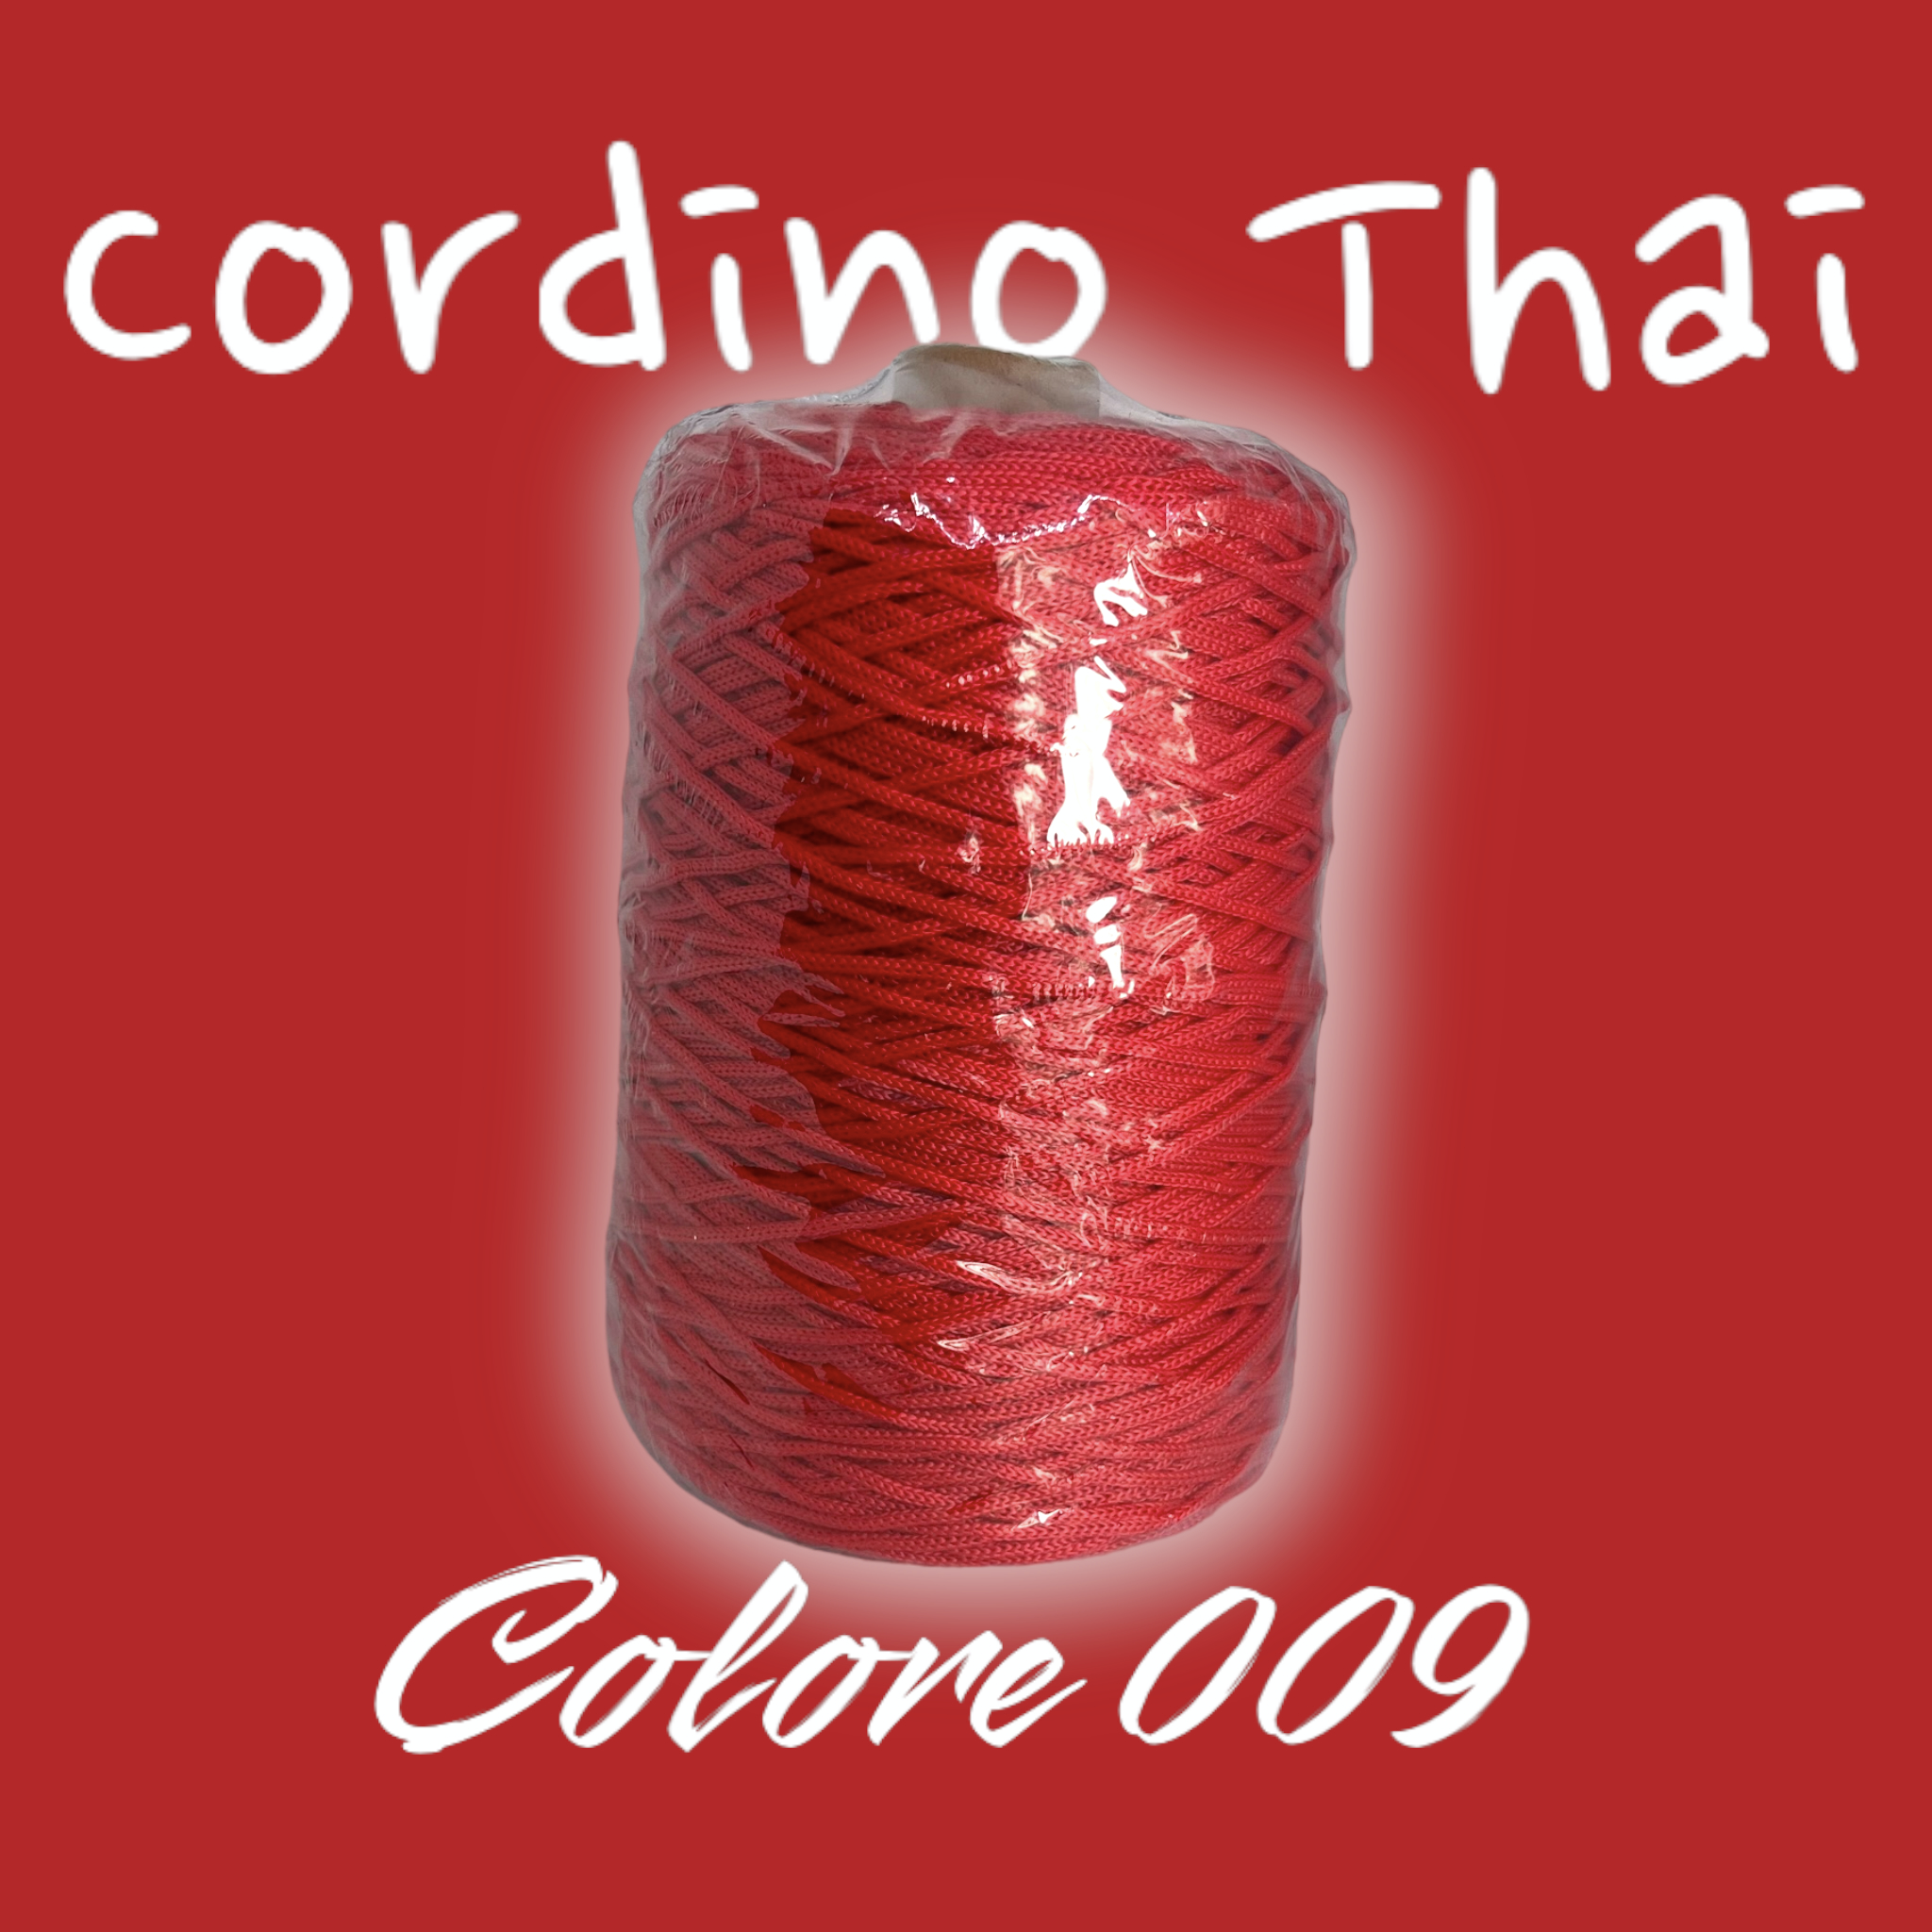 Bundle Cordino Thai Cucirini Tre stelle – 100% Acrilico – 500 Gr - Ricamiamo